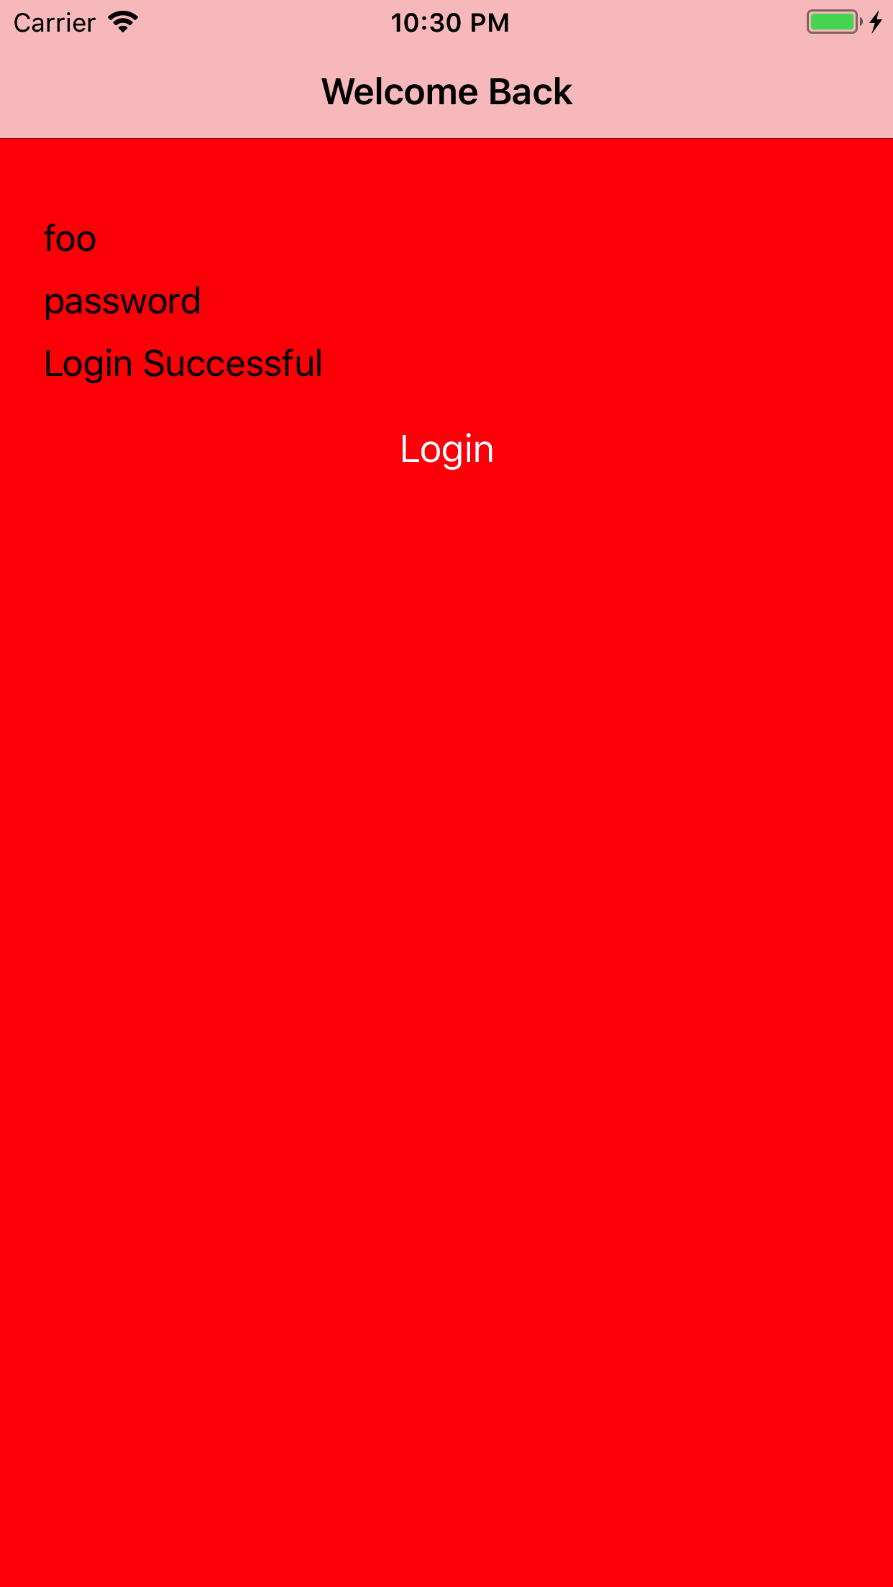 login_success_state